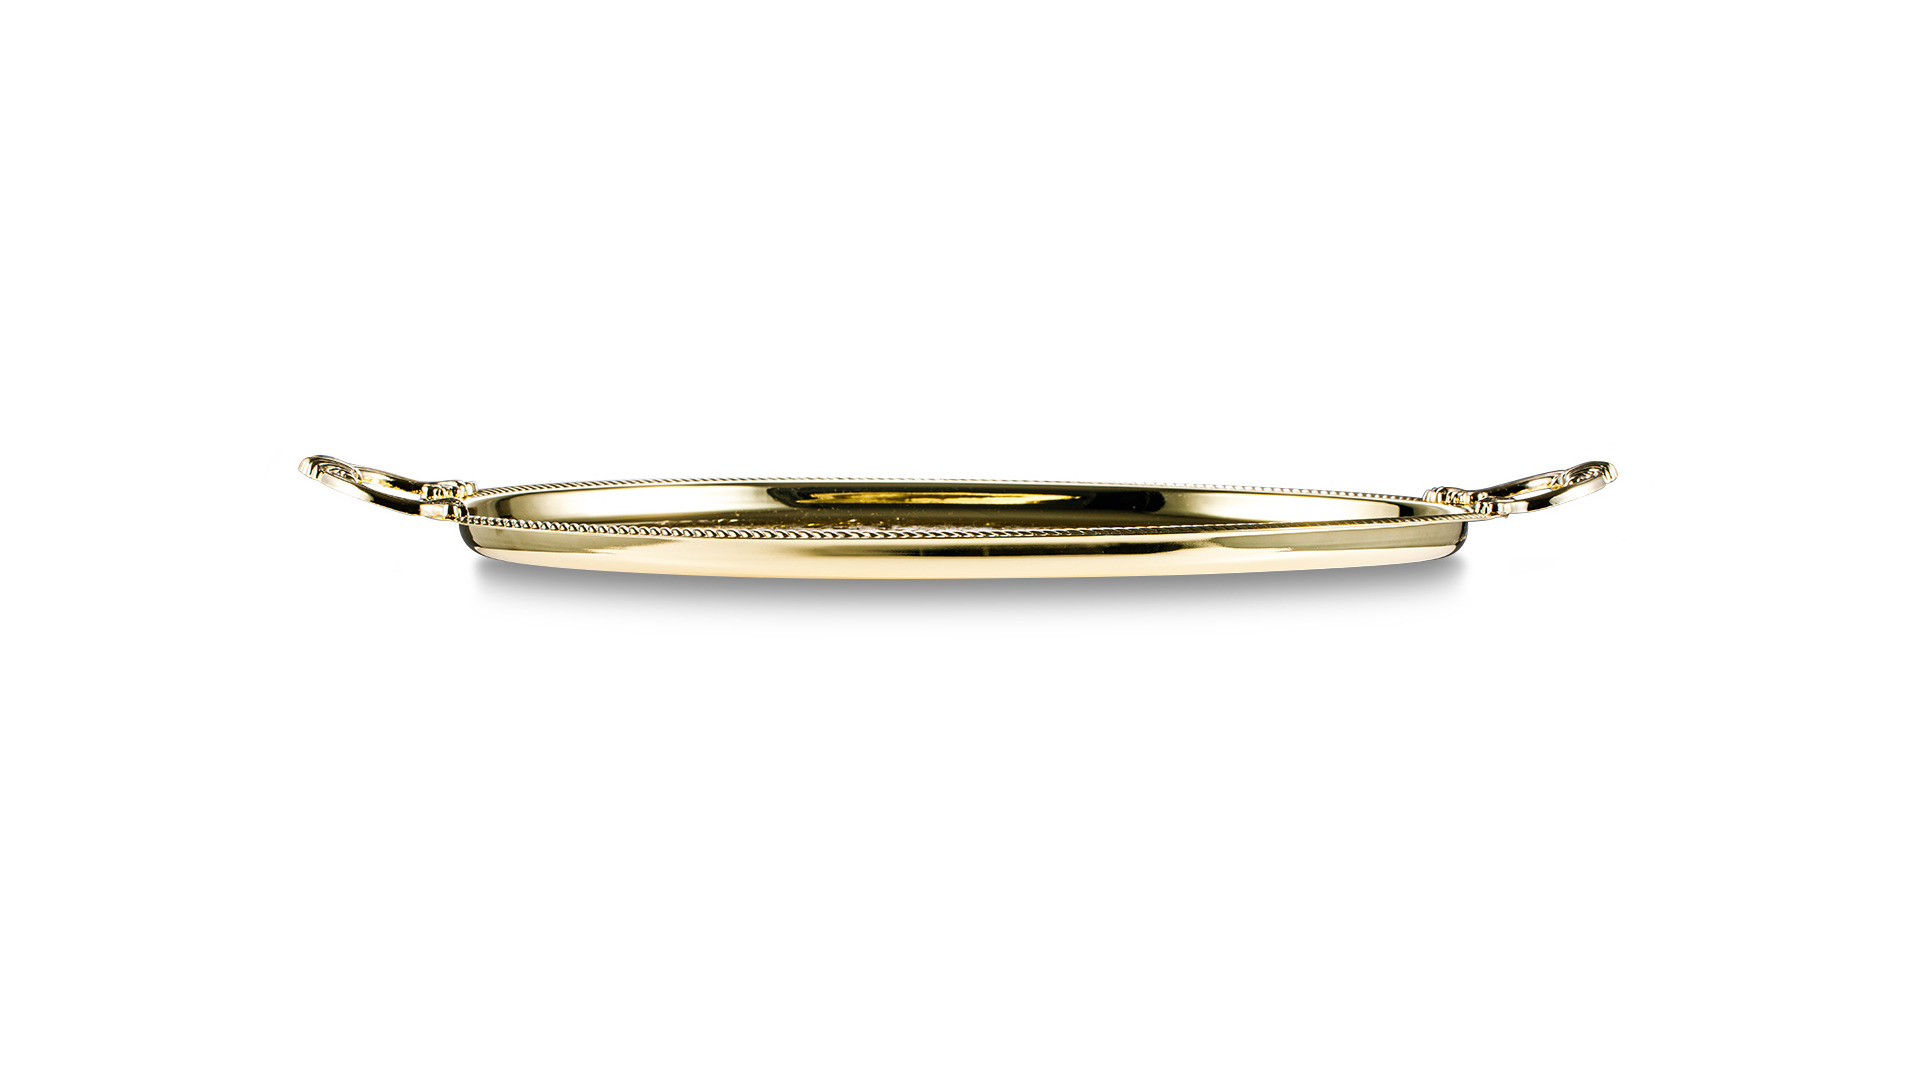 Поднос овальный с ручками Queen Anne 50х32 см, золотистый, сталь нержавеющая